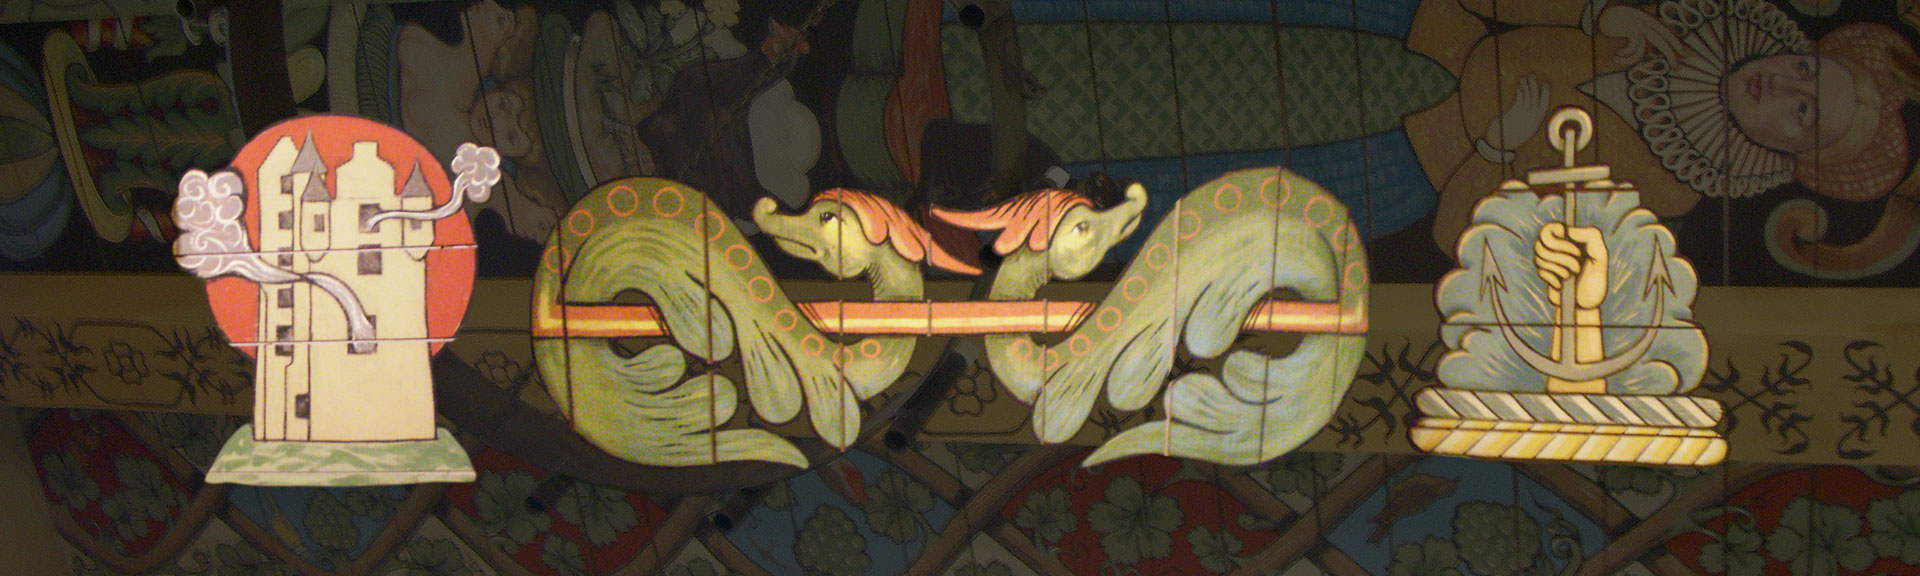 Farside Castle Painted Ceiling Details 